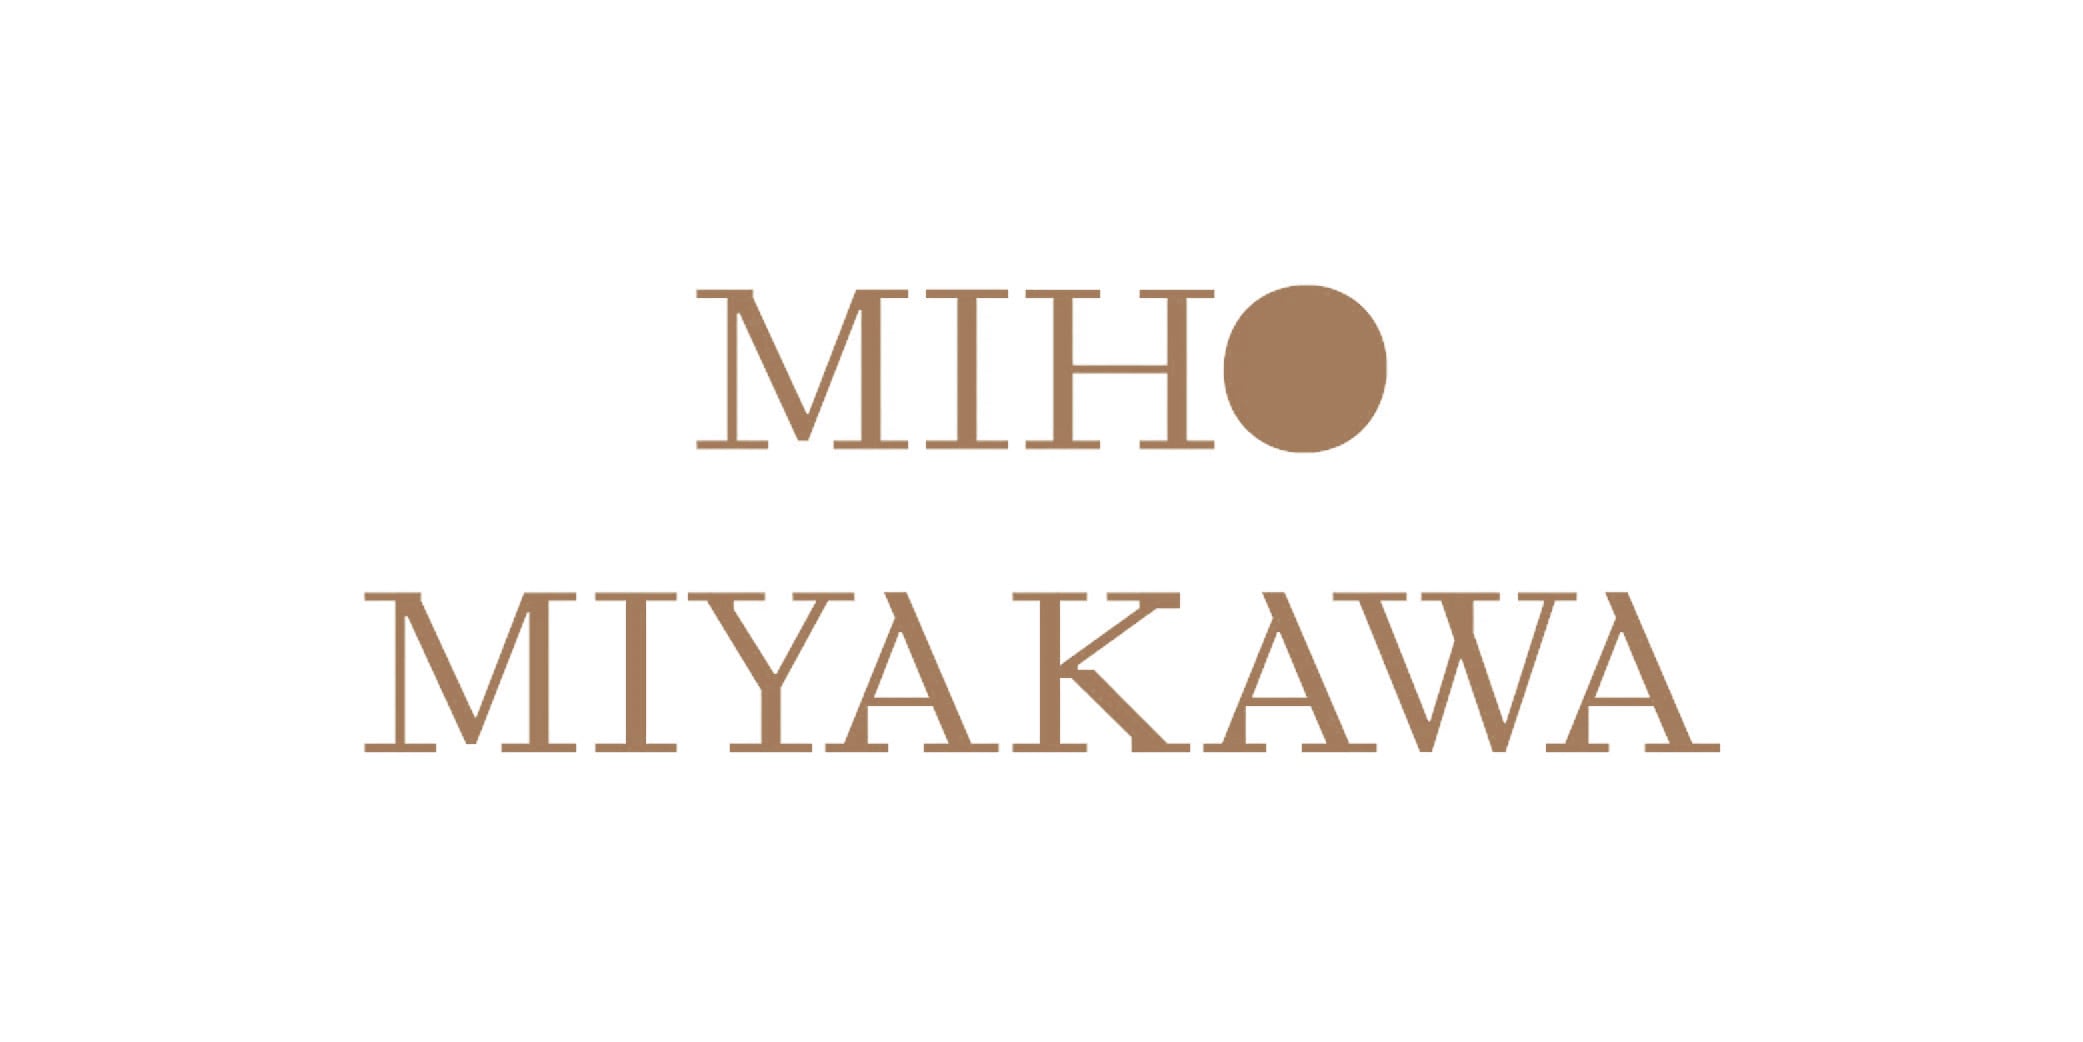 Miho Miyakawa